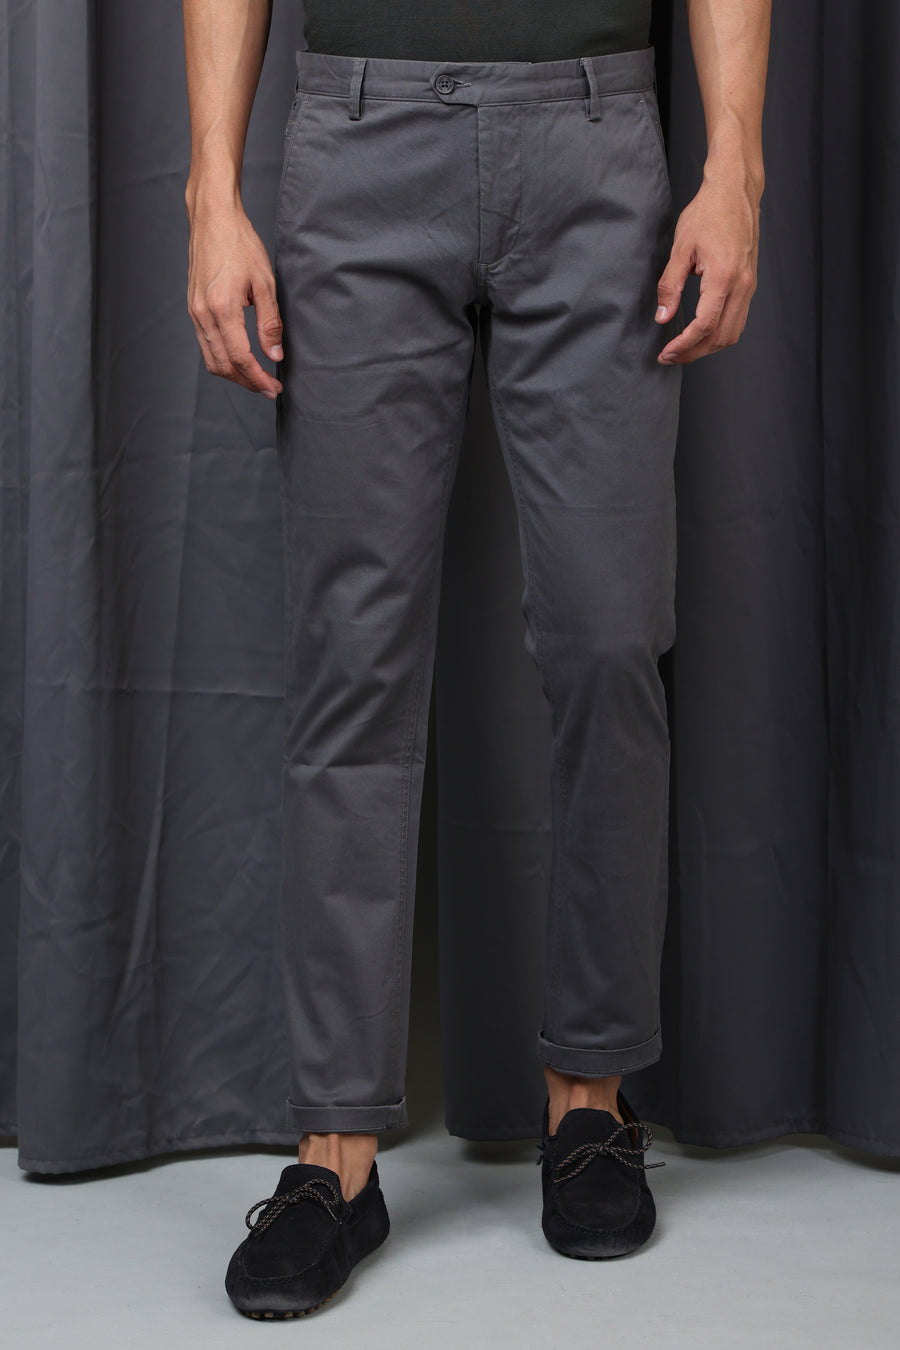 Pop - Premium Strech Trouser - Dk Grey